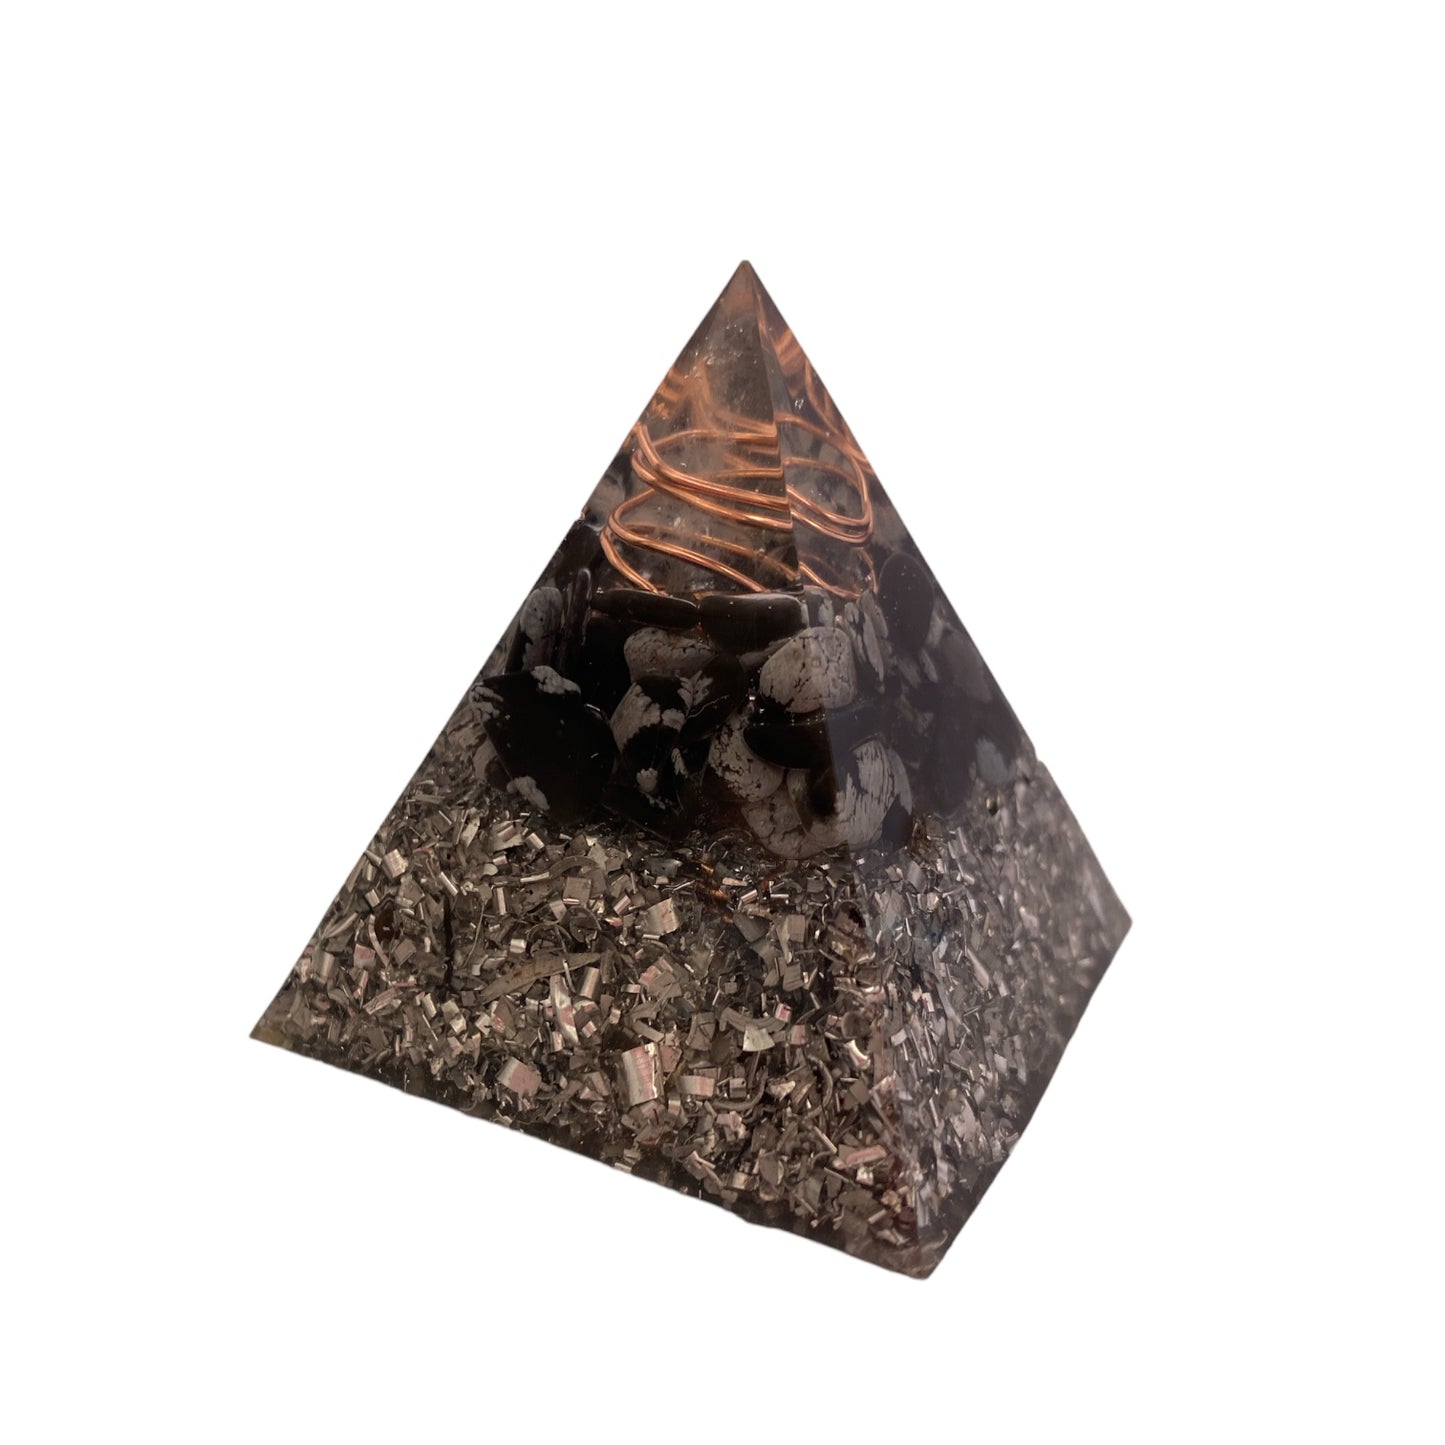 Snowflake Obsidian Orgonite Pyramid - 5cm